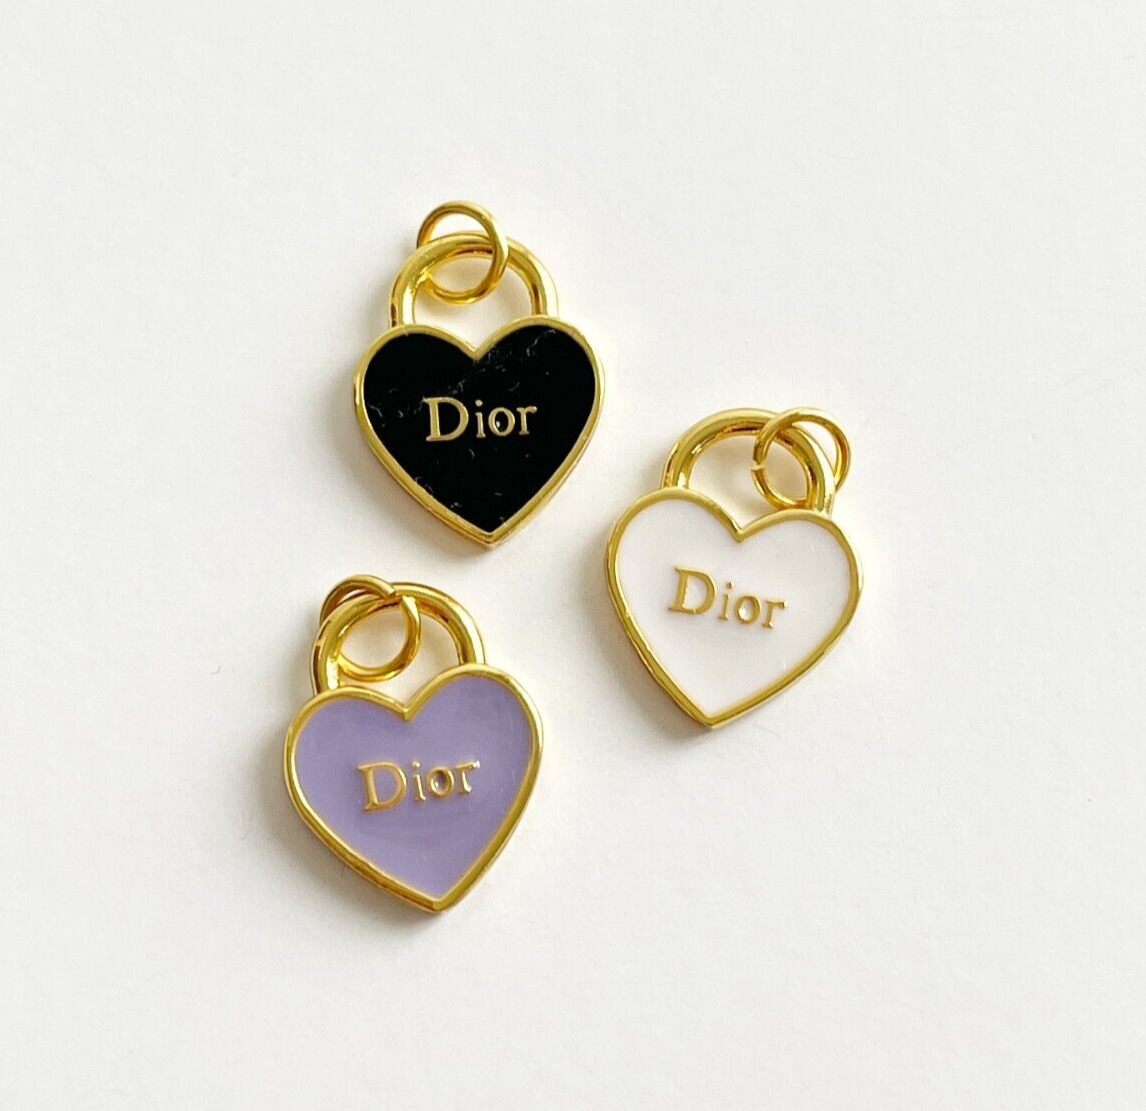 Dior Gold Metal Zipperpull Button Heart Pendant NEW | Bundle of 3